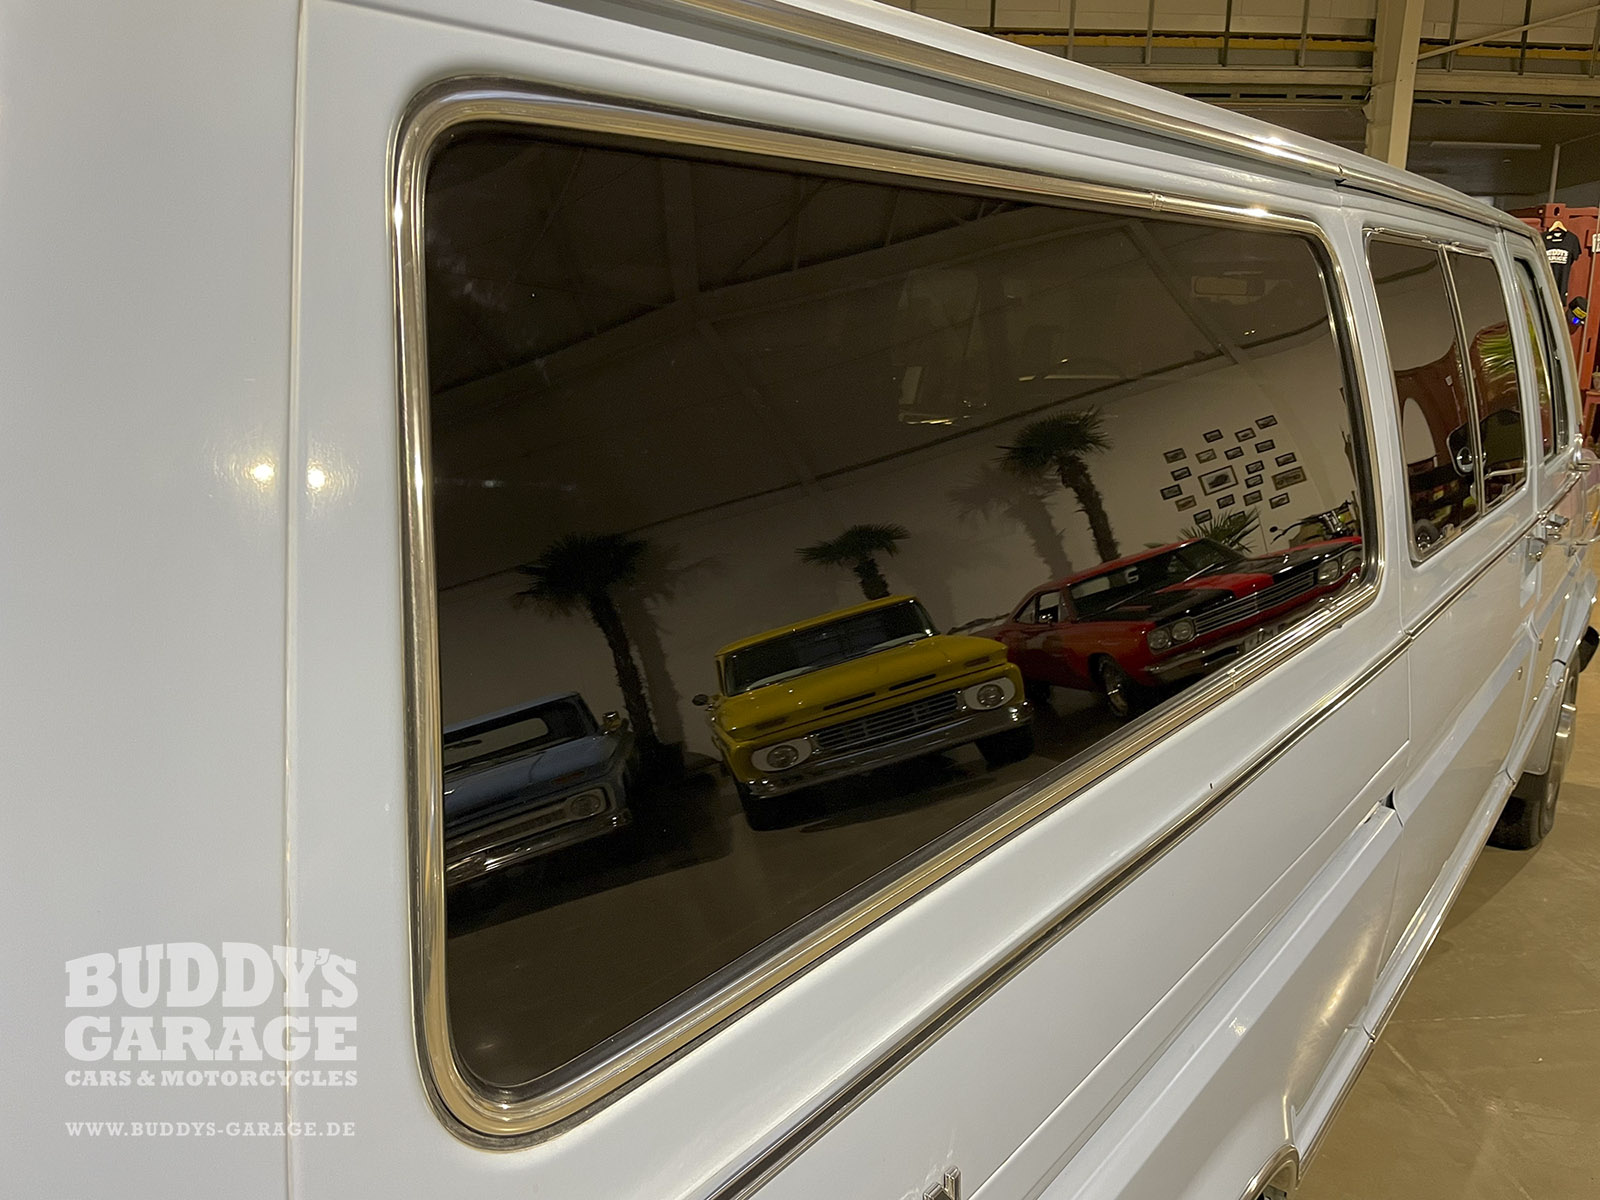 Ford Econoline E-250 Club Wagon 1977 | Buddy's Garage Bad Oeynhausen